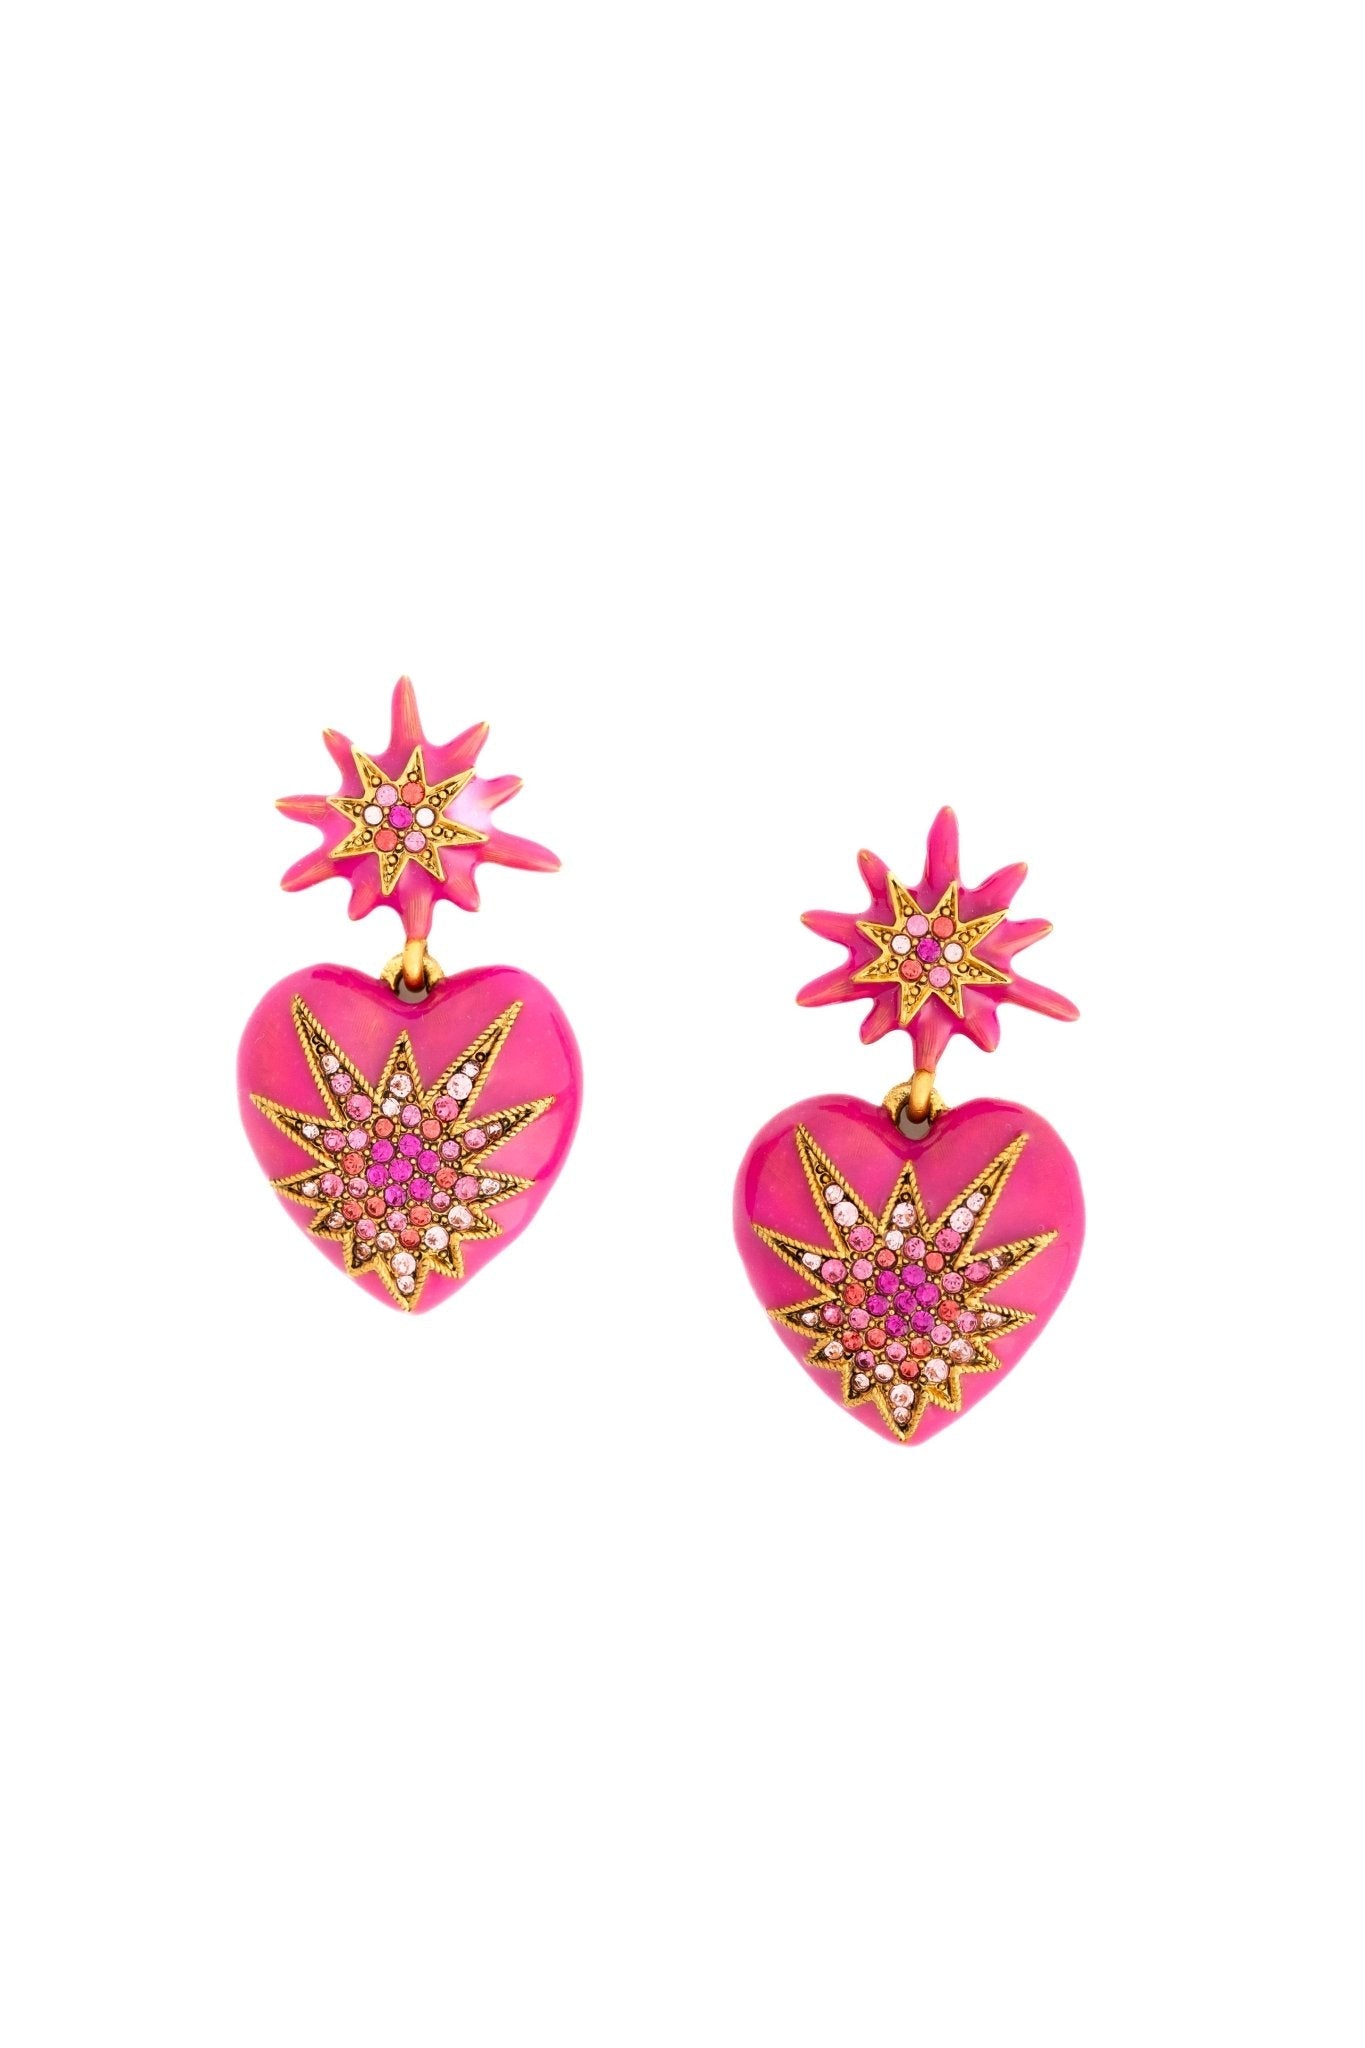 Elizabeth Cole Jewelry - Love Me Earrings, Pink